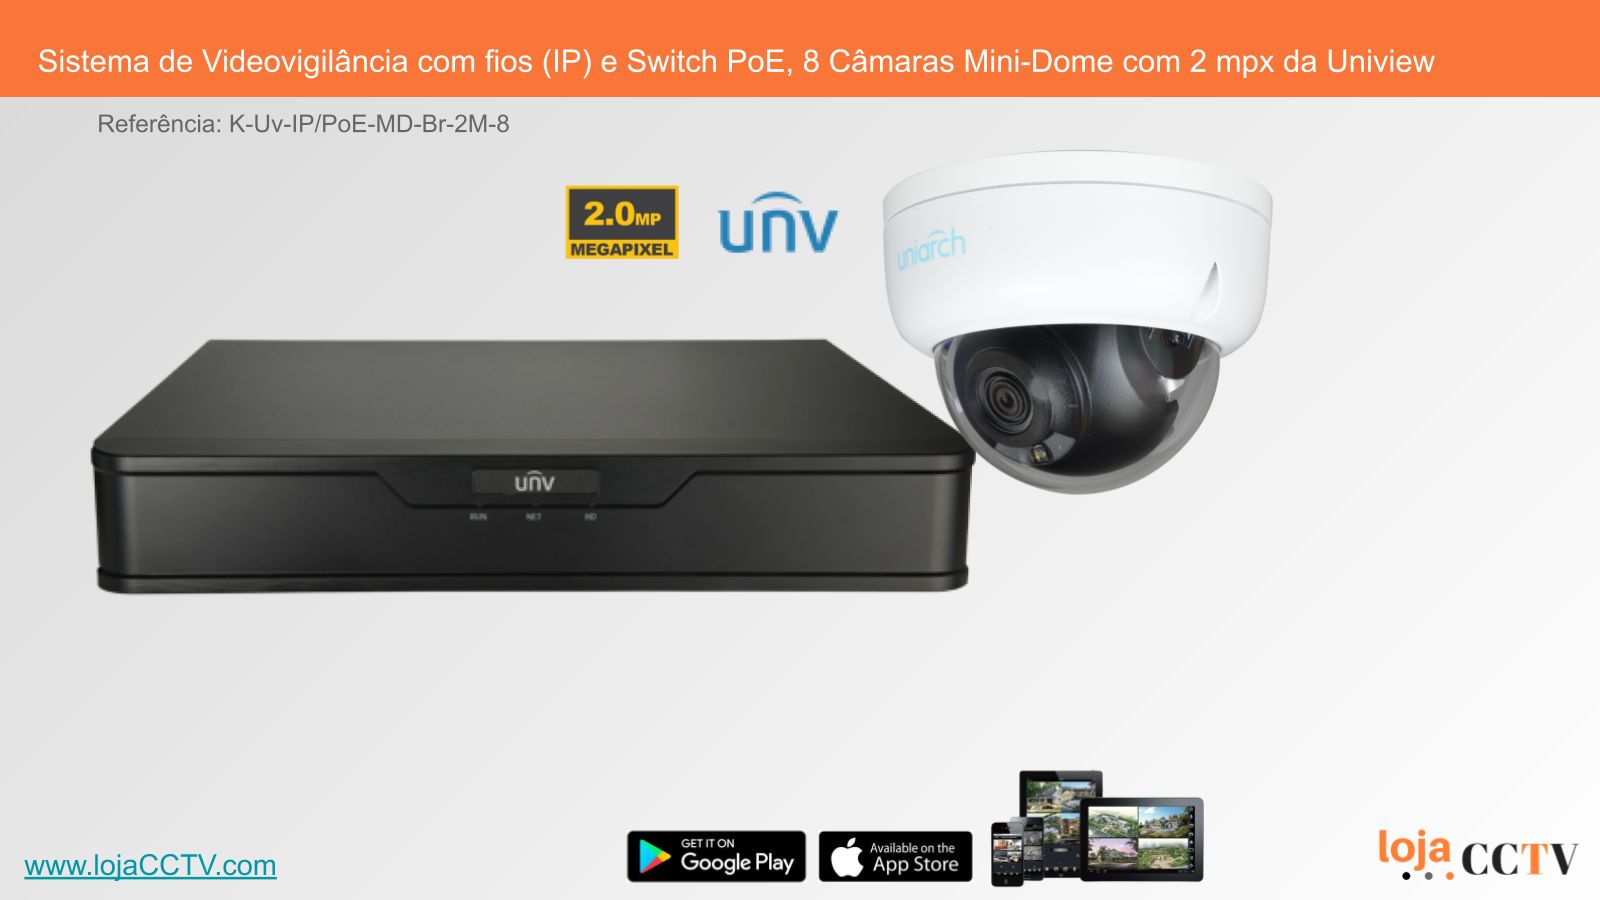 Videovigilância com fios (IP) e Switch PoE 8 Câmaras Mini-Dome 2 mpx,